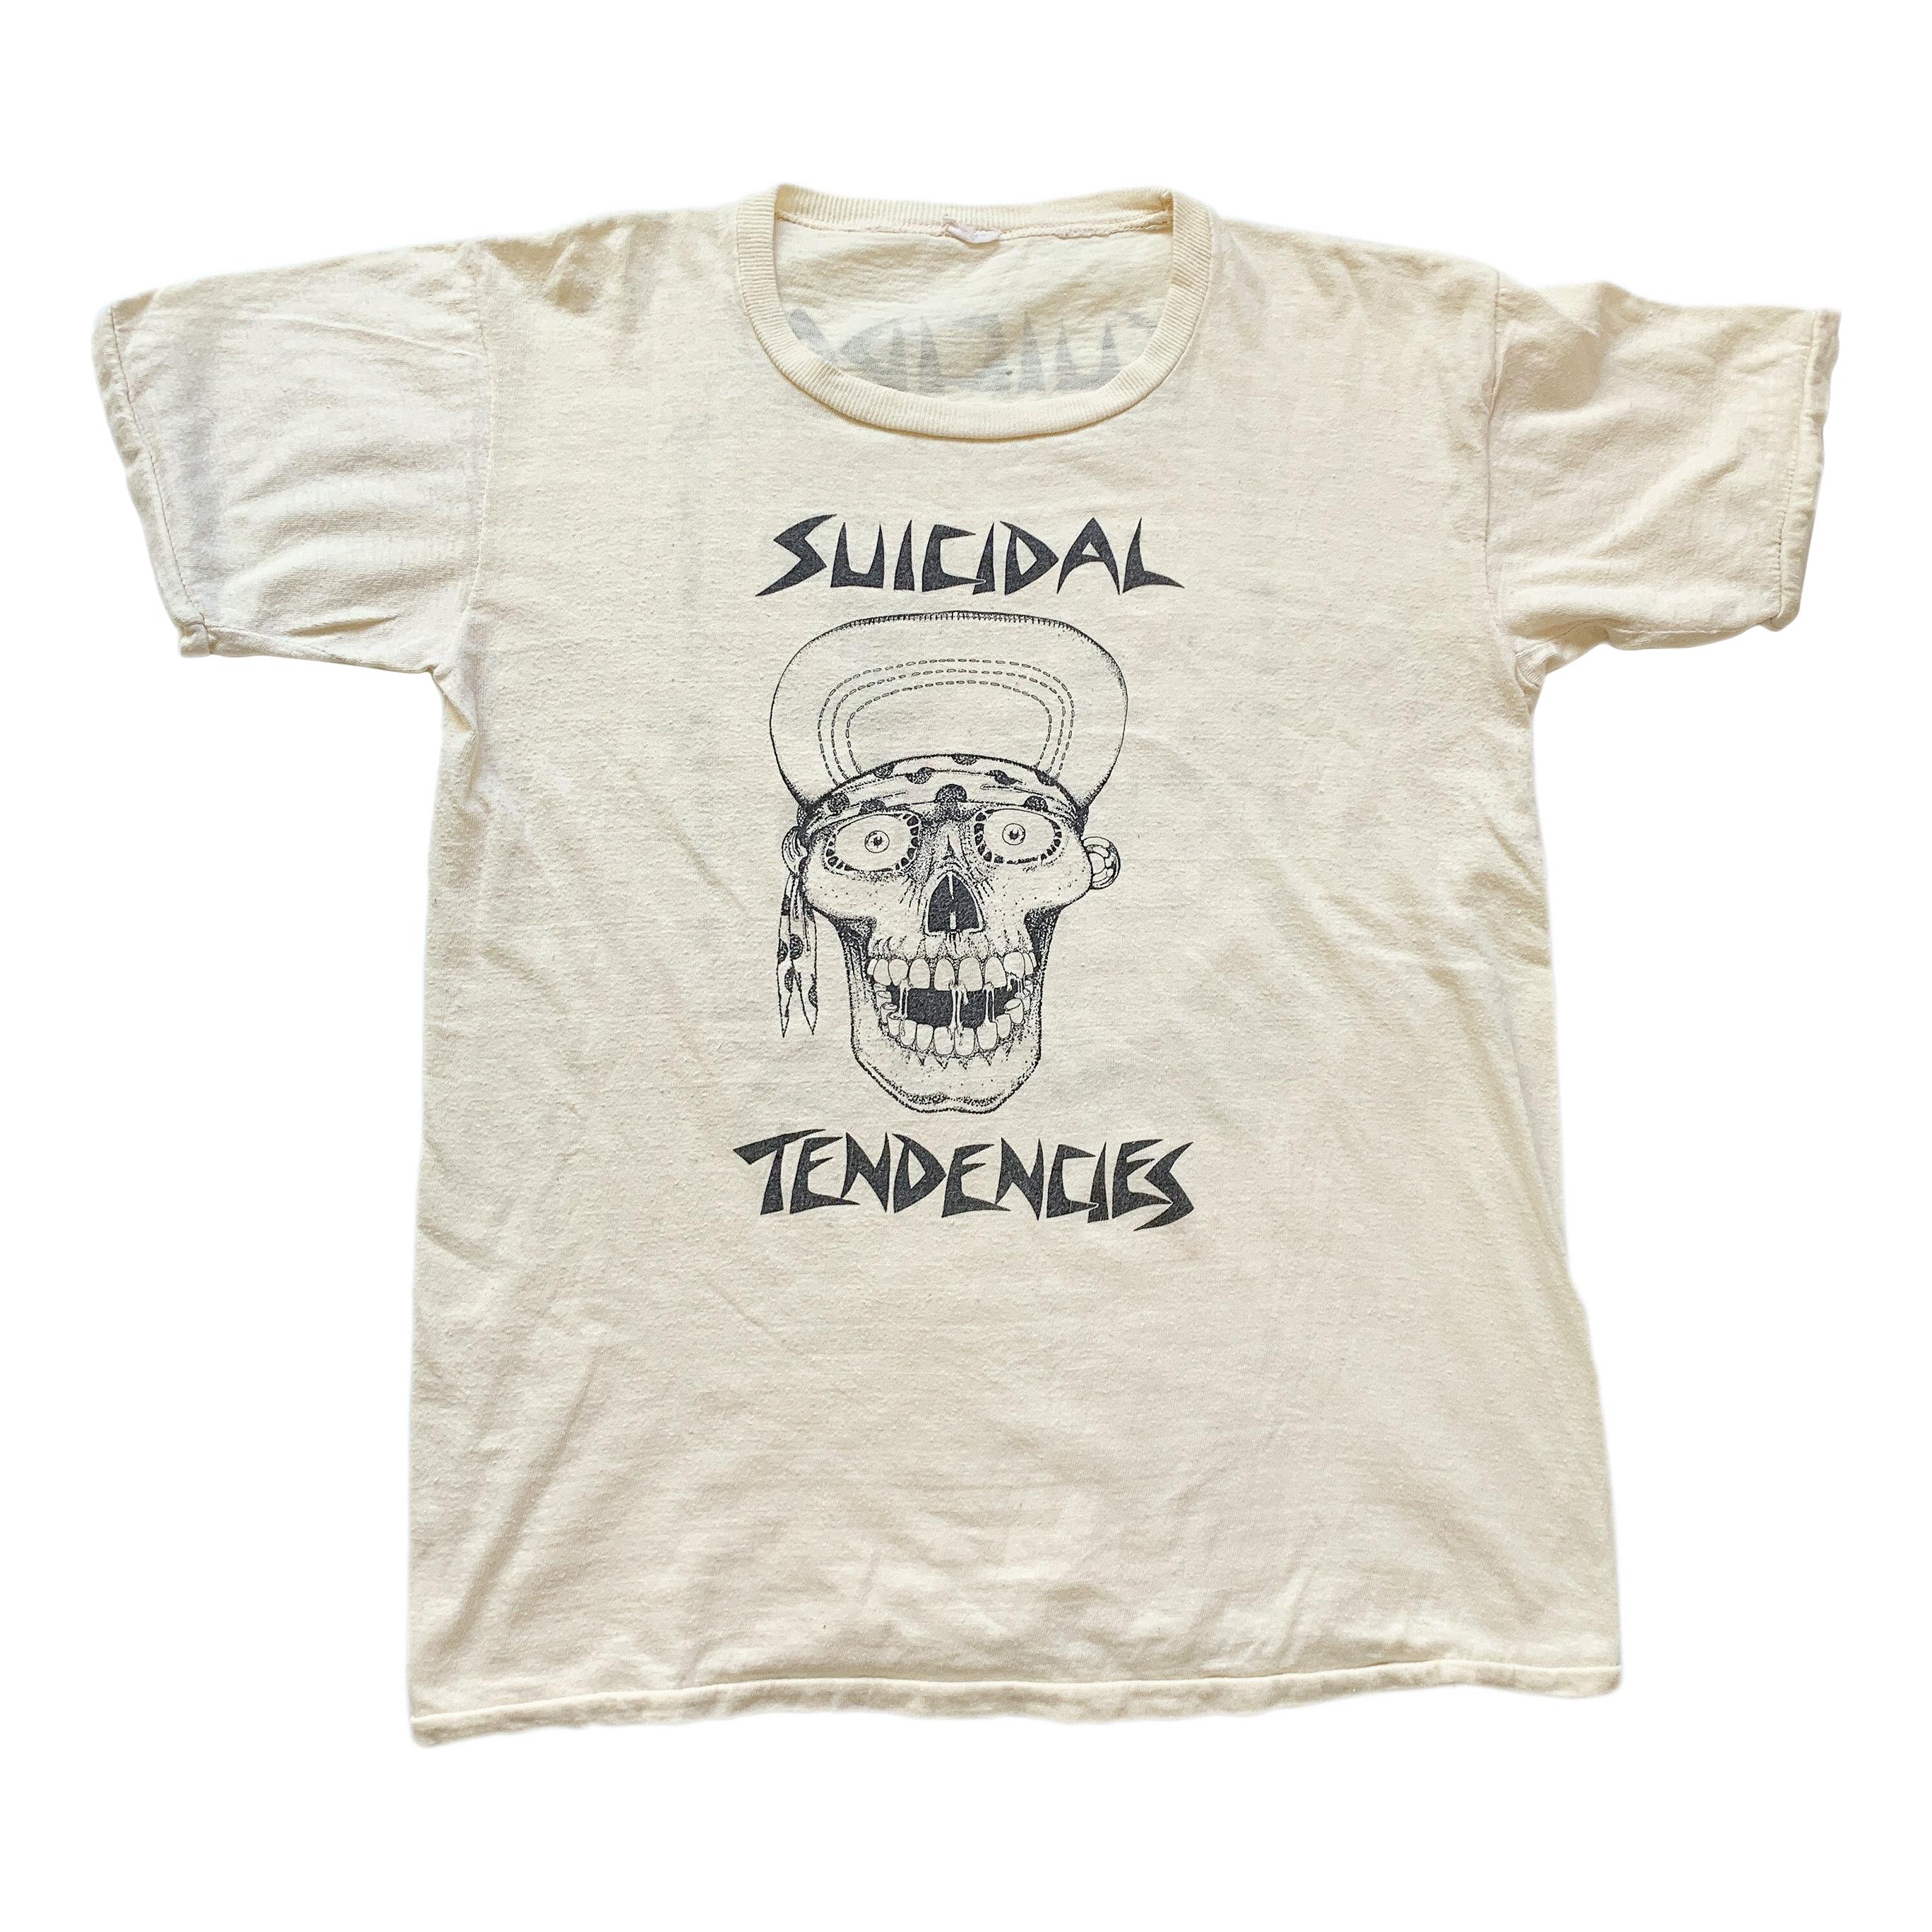 Vintage 1980s Suicidal Tendencies Skate T-Shirt